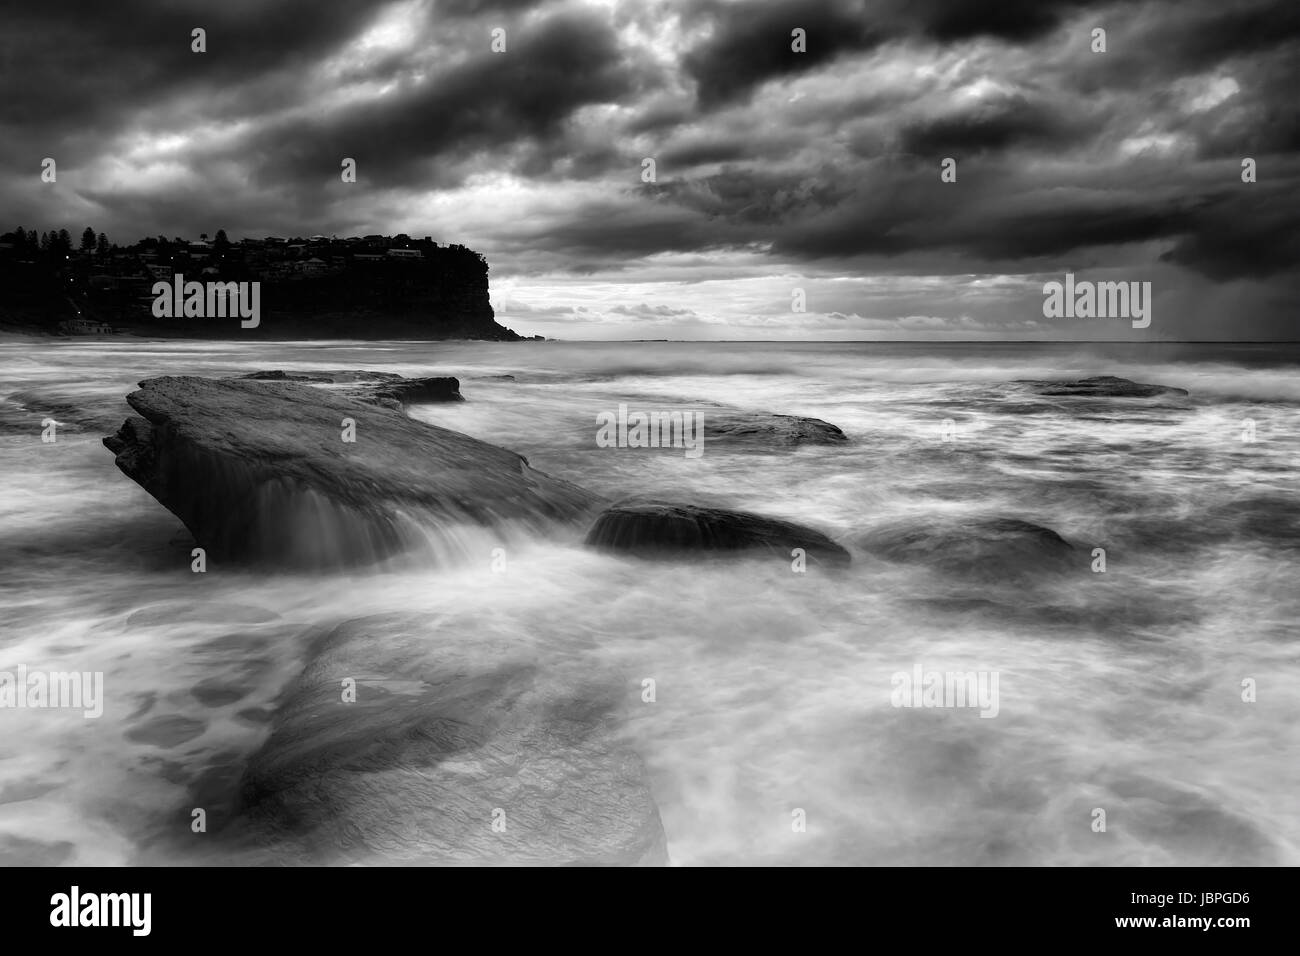 Dramatische stürmischen Wetterbedingungen am Sydney Küste des Pazifik Aroudn Bungan Strand mit getauchten Felsbrocken überflogen von sanften Wellen in schwarz-weiß-co Stockfoto